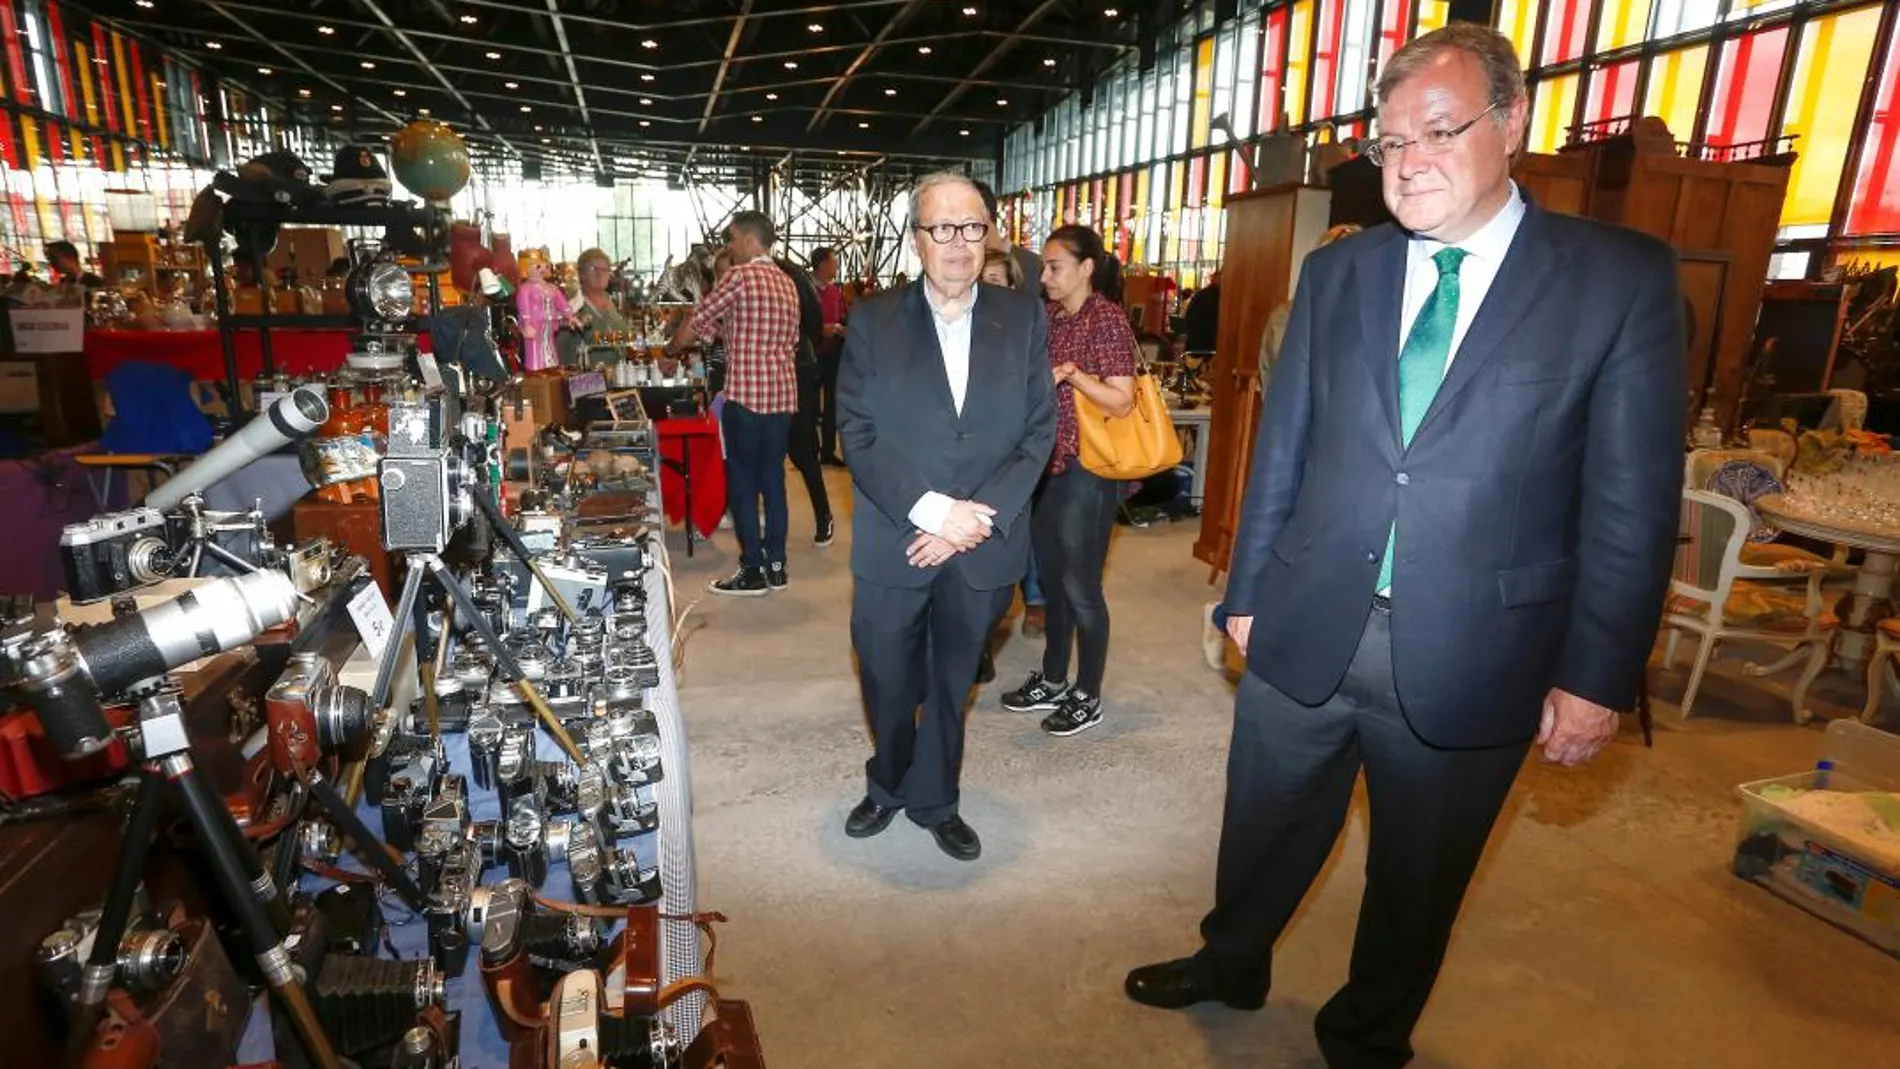 El alcalde Antonio Silván recorre la exposición en compañía de José María Casas, gerente de Desembalaje.